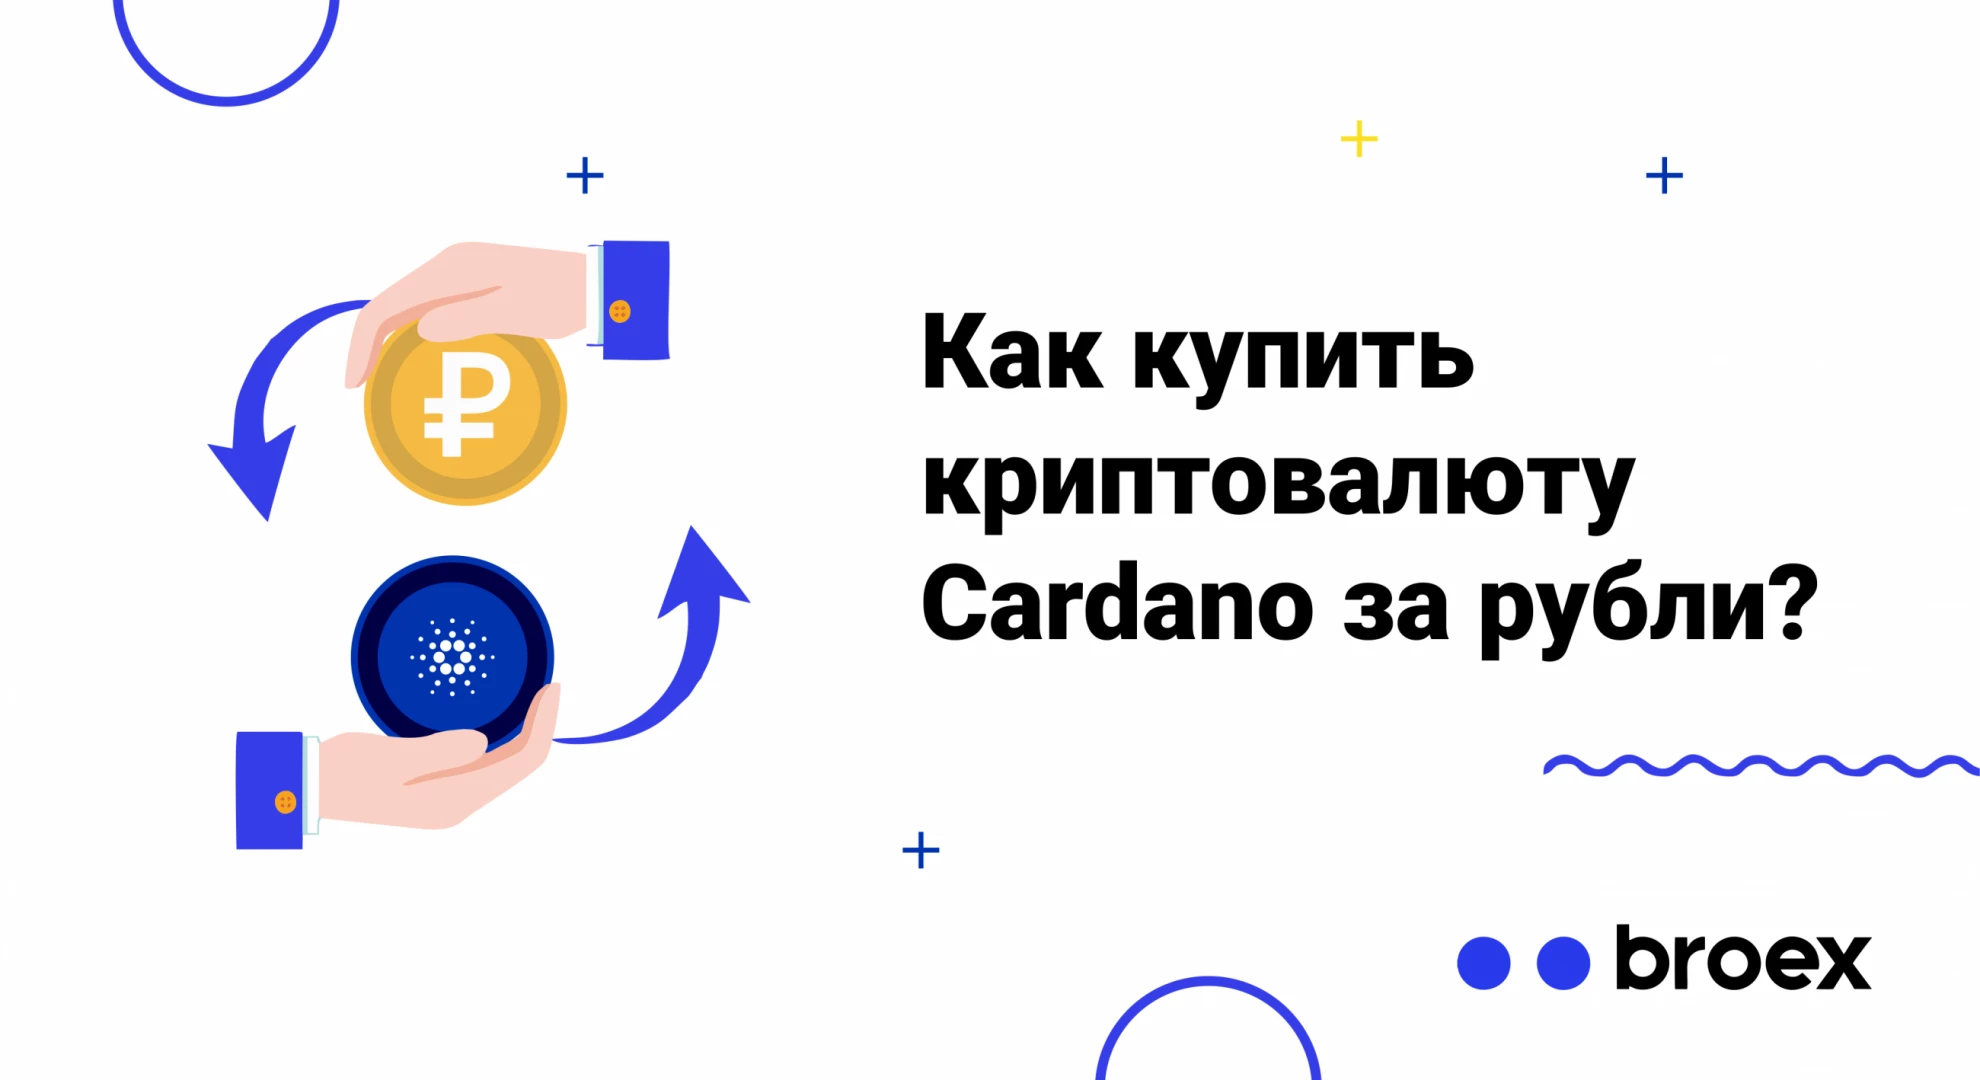 Как купить криптовалюту Cardano за рубли?